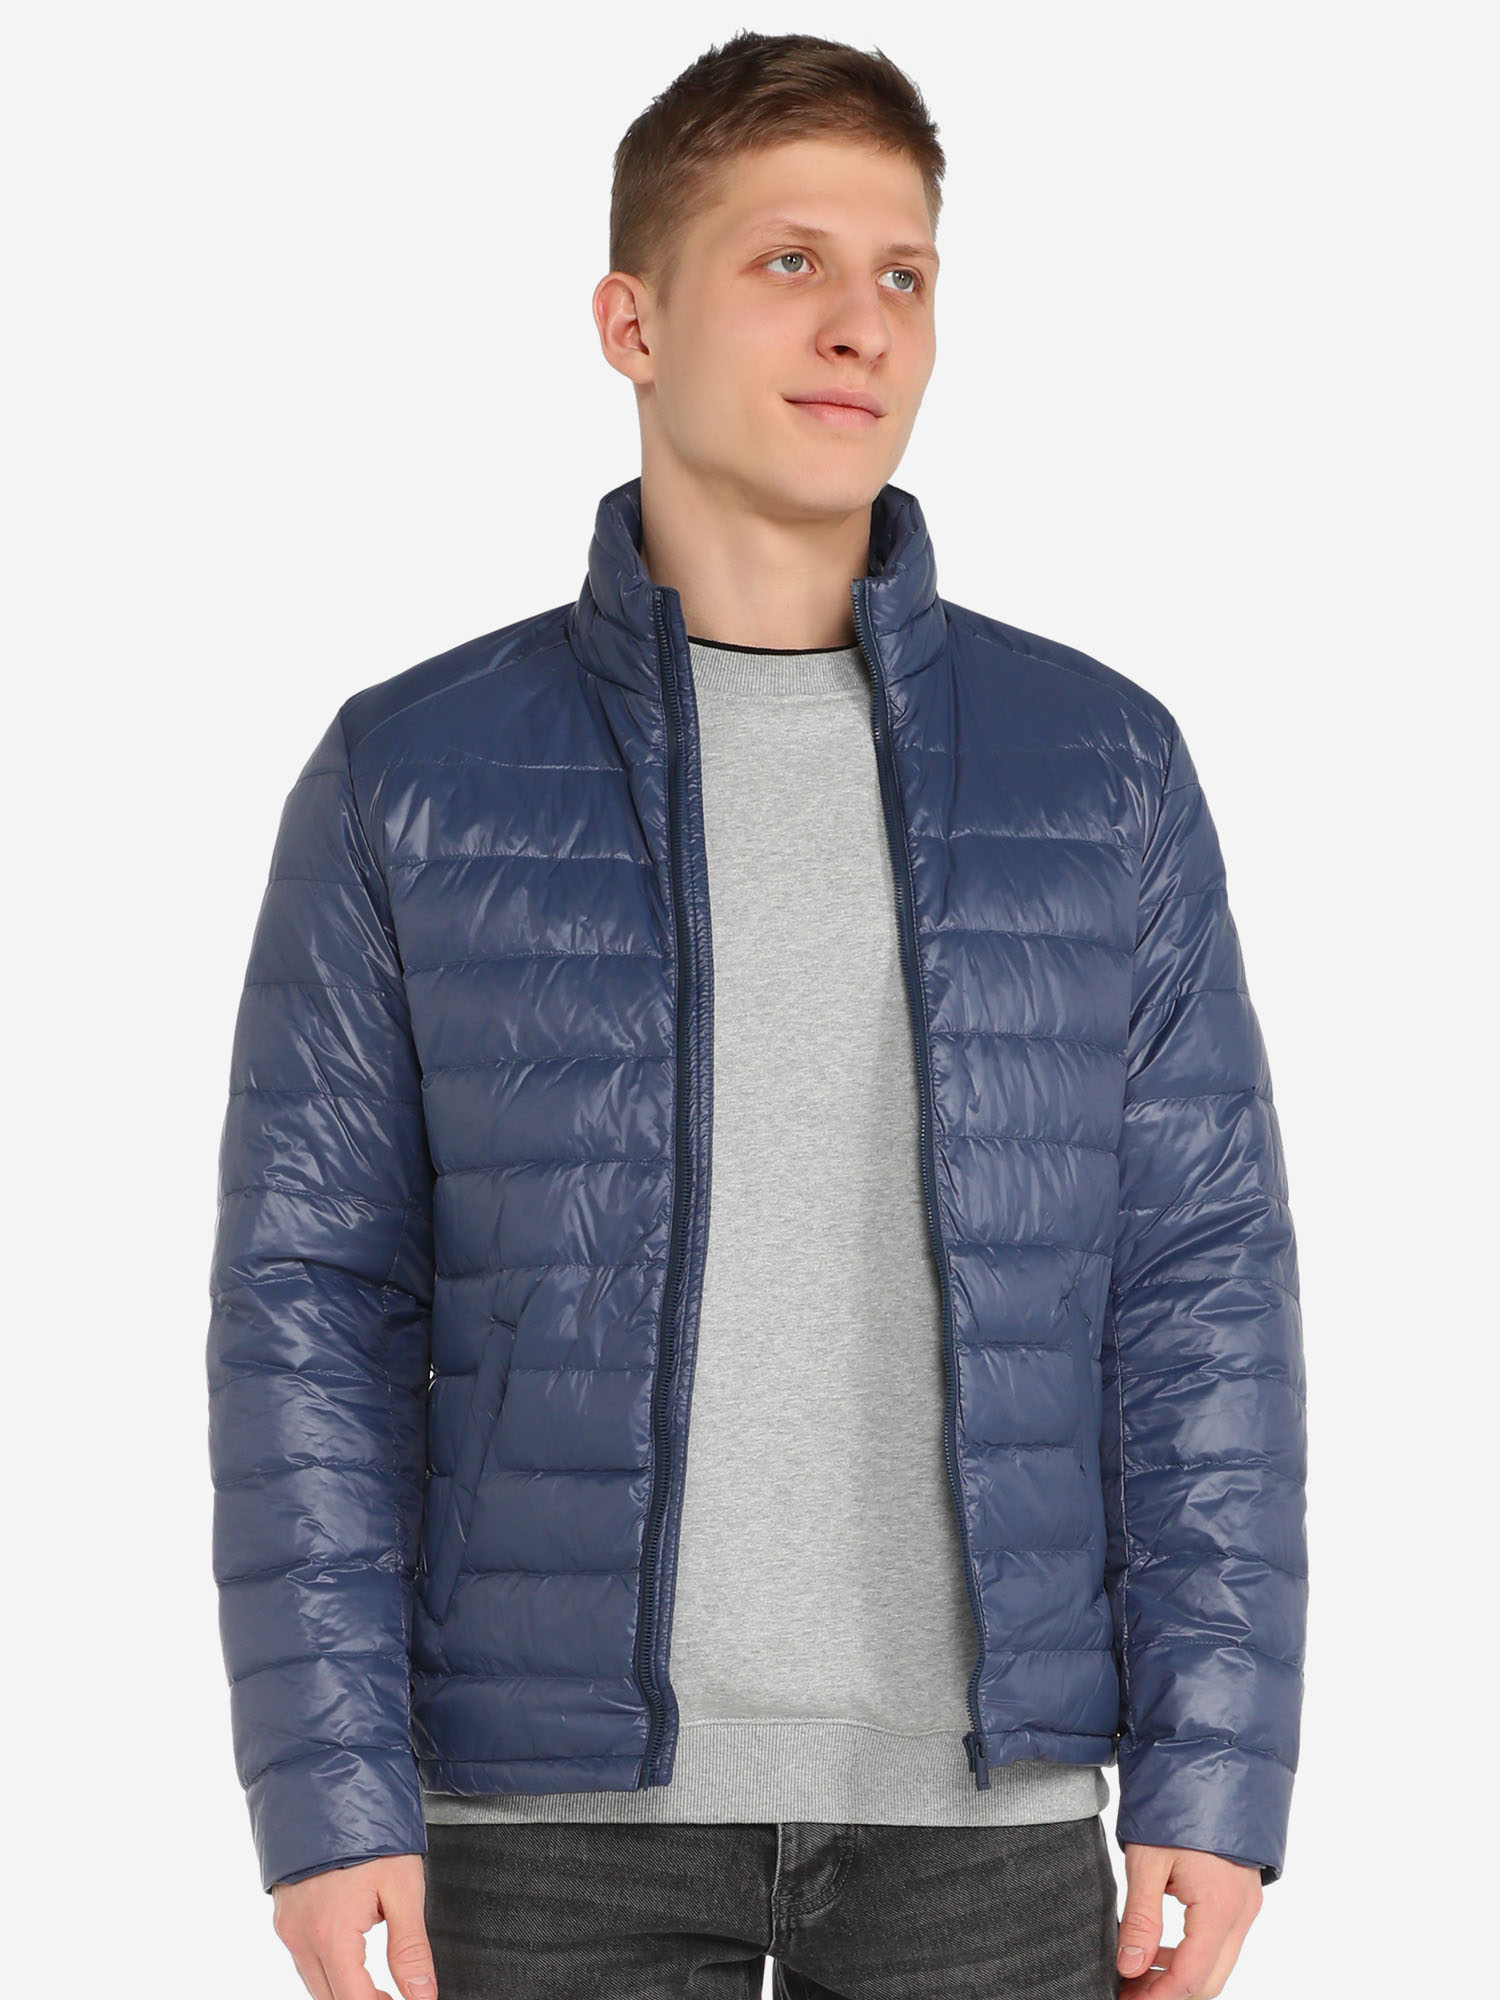 Мужская куртка пуховик MAISON DAVID (пух/перо), Синий куртка утепленная мужская columbia woolly hollow ii jacket красный